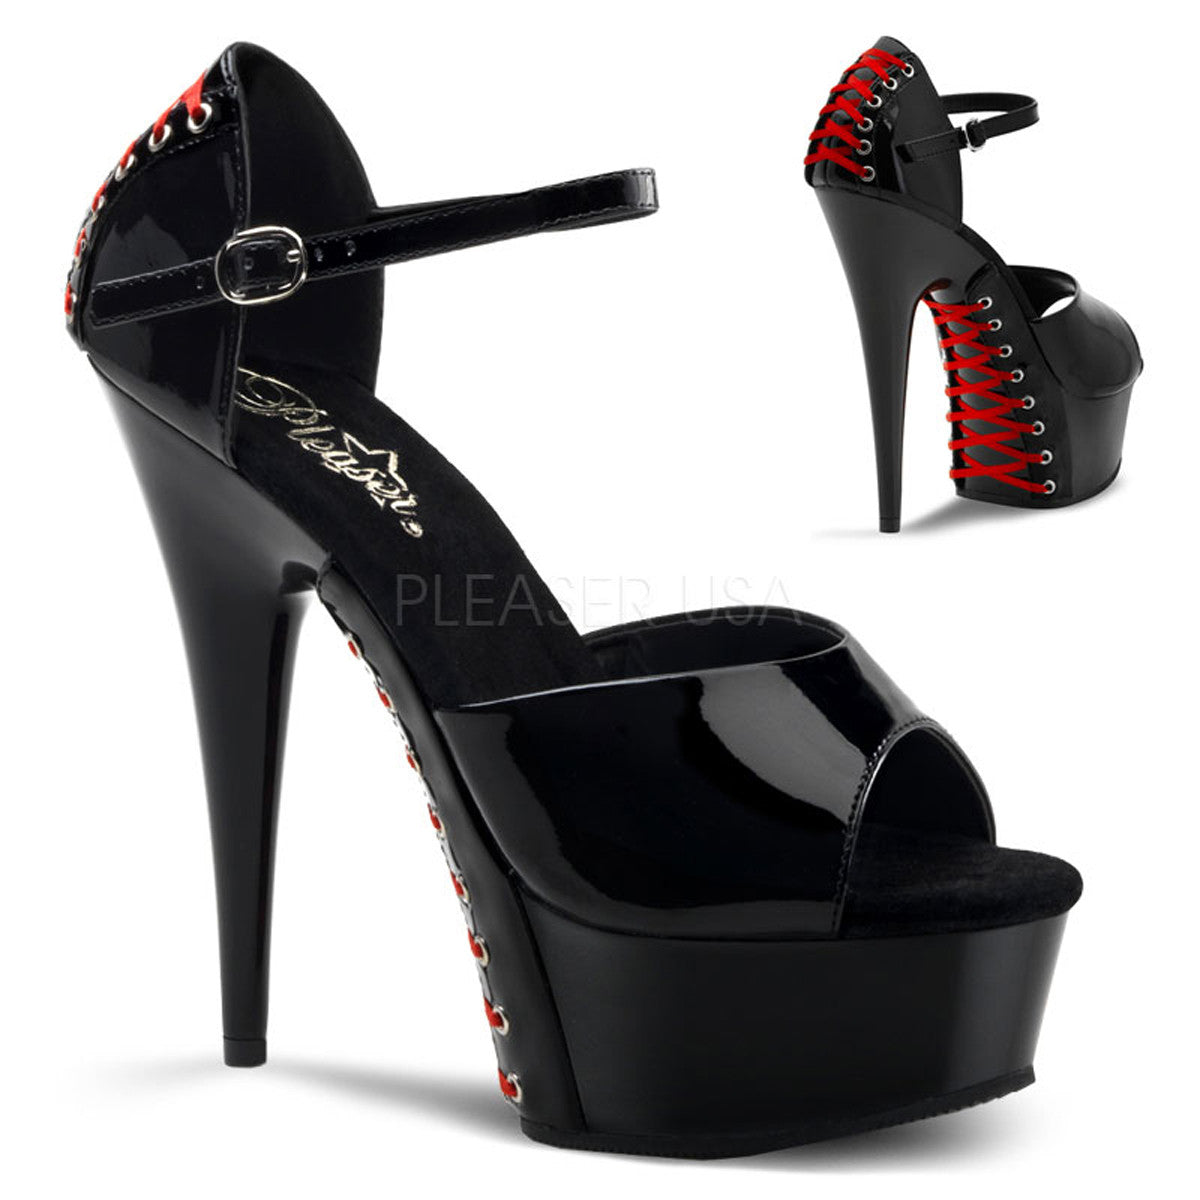 PLEASER DELIGHT-660FH Black Pat (Red Lace) Platform Sandals | Shoecup.com